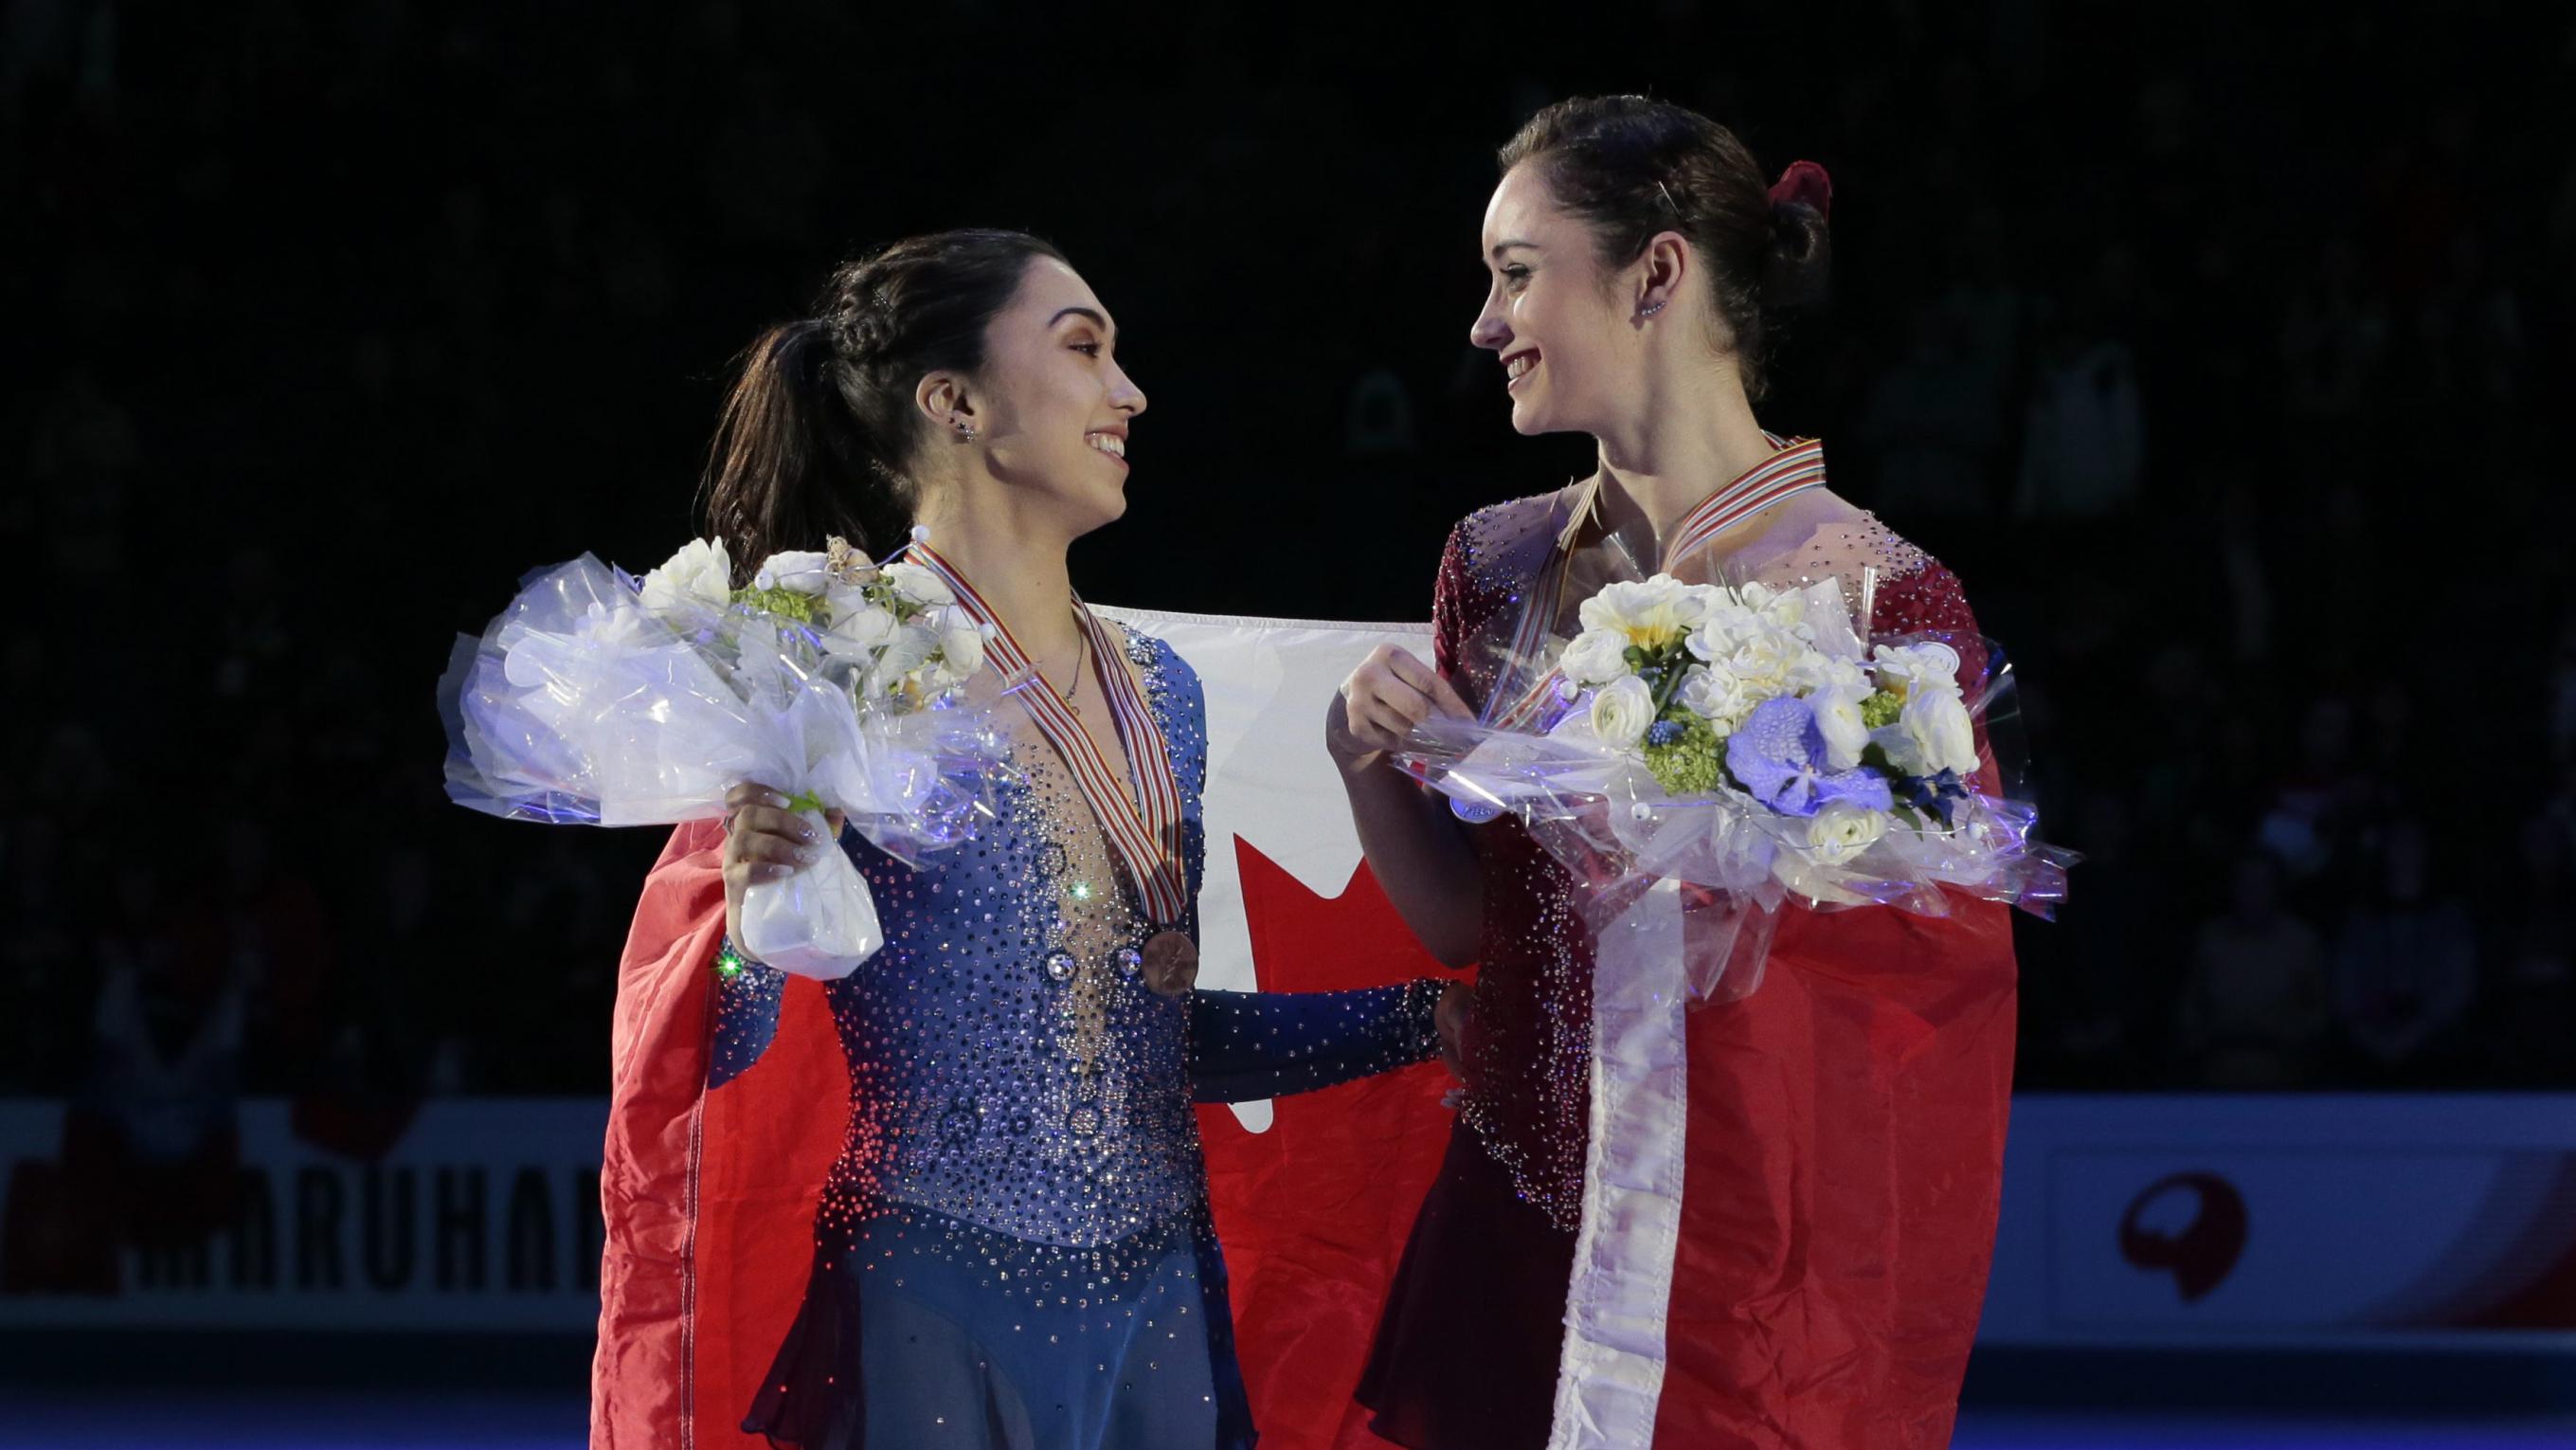 Équipe Canada - Kaetlyn Osmond (droite) et Gabrielle Daleman aux Mondiaux de patinage artistique 2017